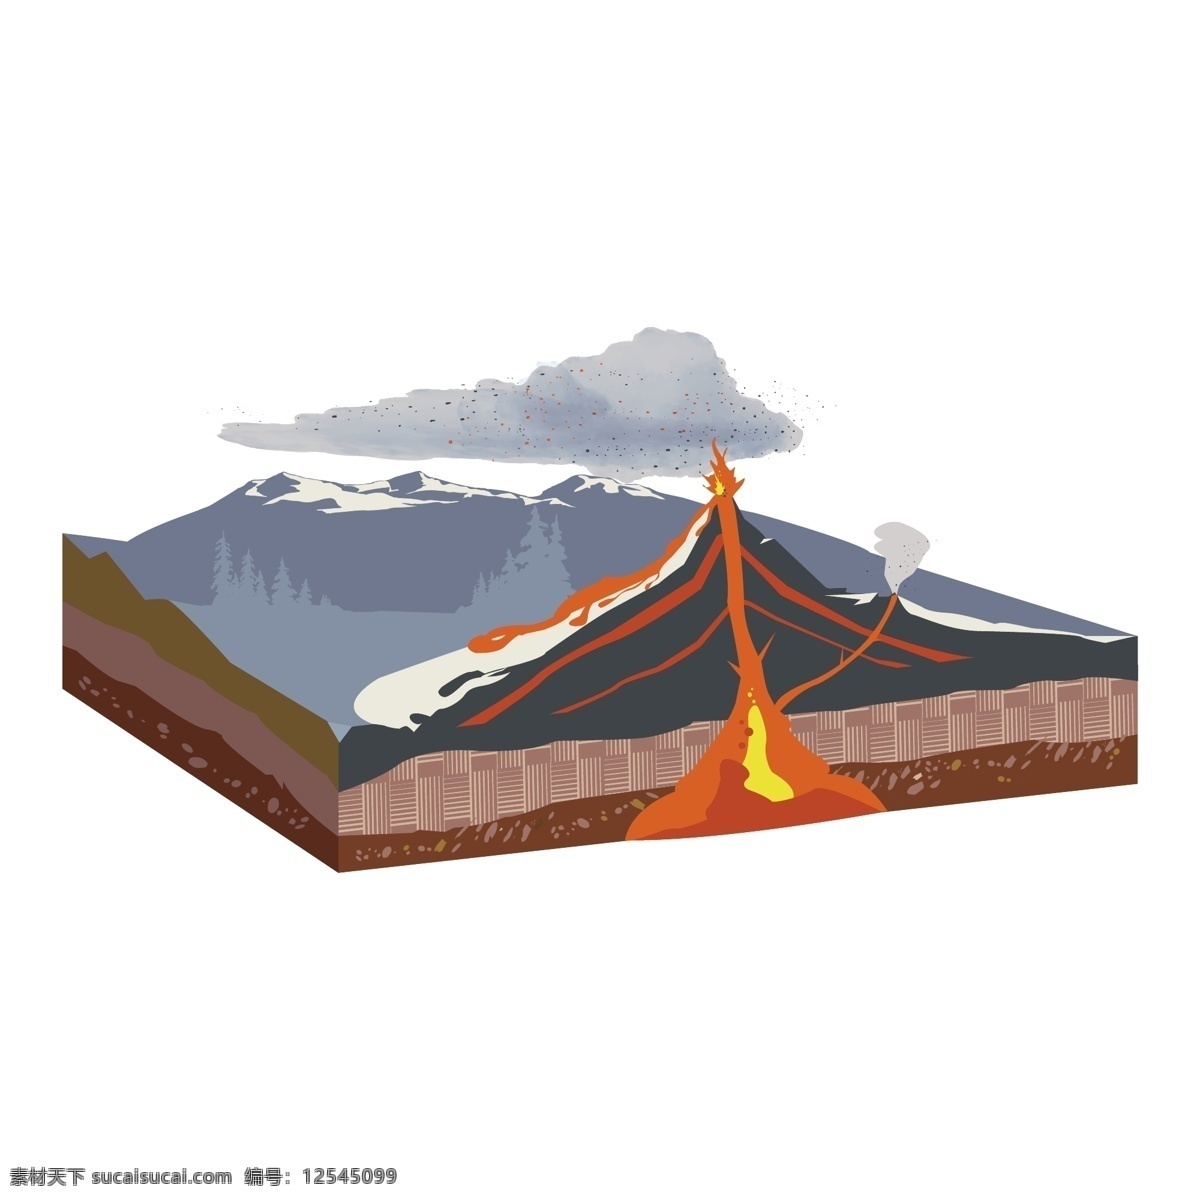 火山 喷发 解剖 矢量 火山喷发 喷发火山 卡通 卡通火山 自然 自然灾害 灾害 火车喷发灾害